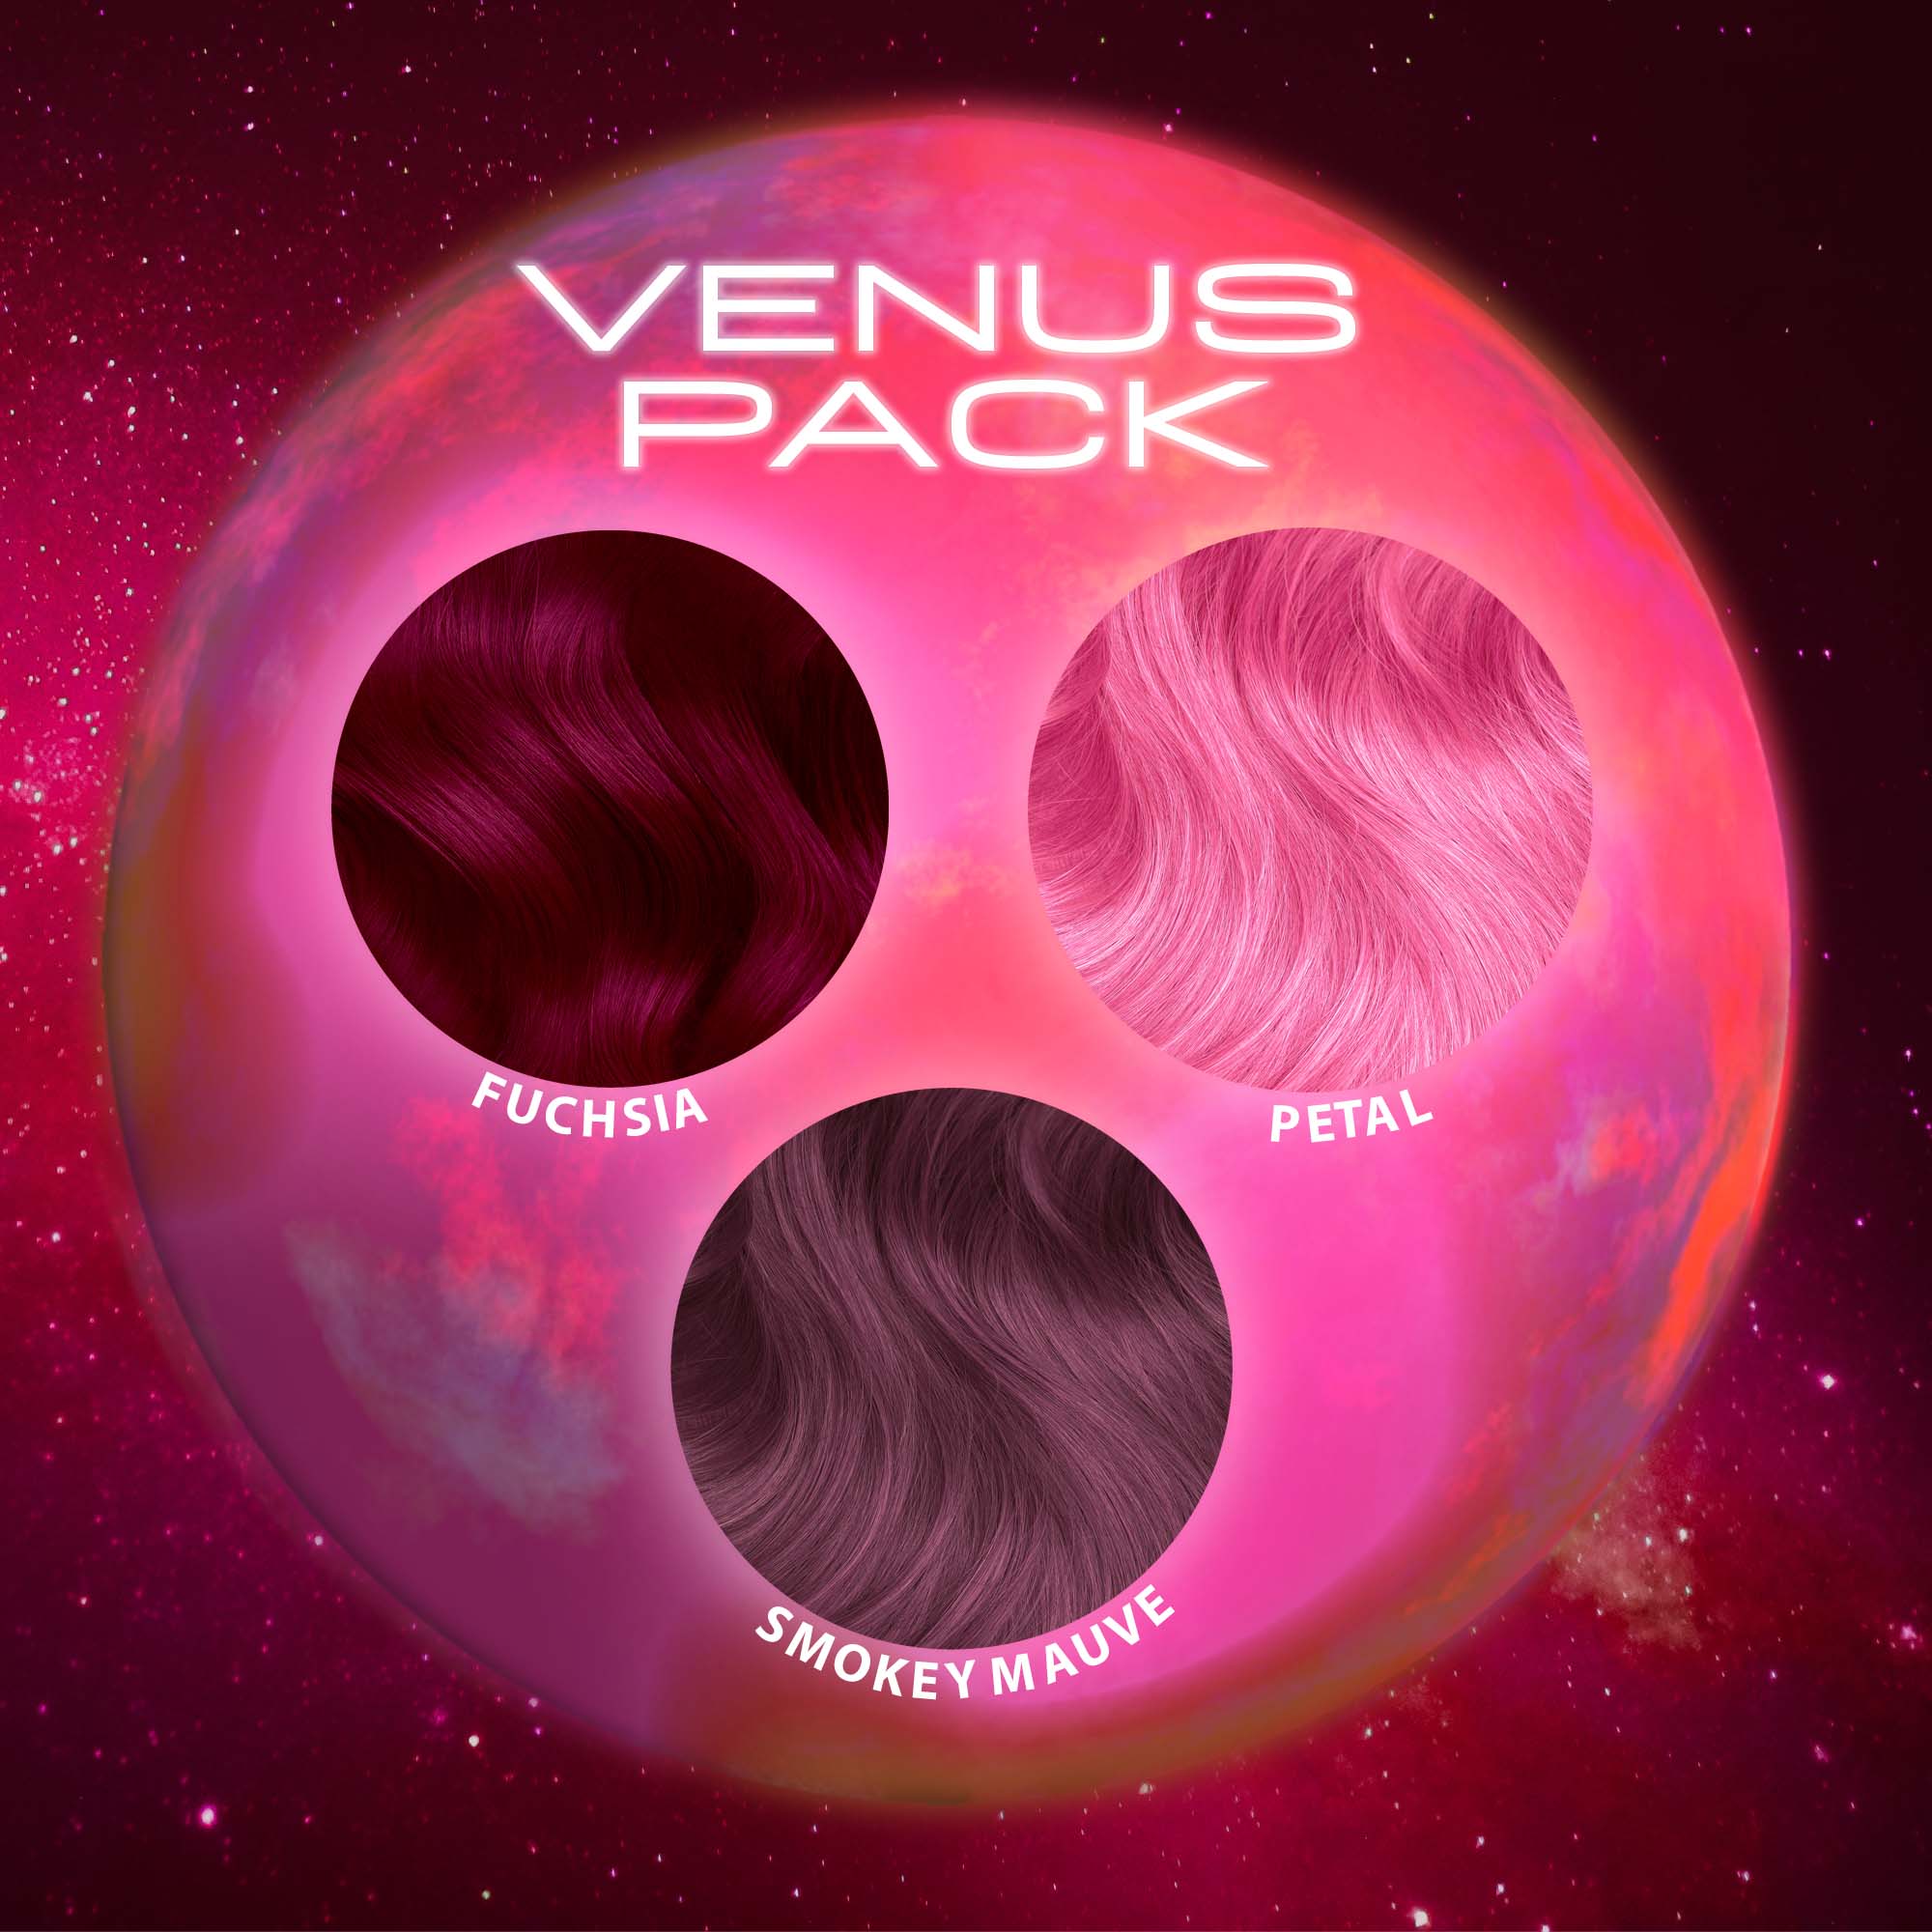 VENUS PACK - 3 JARS! - LUNAR TIDES HAIR DYES